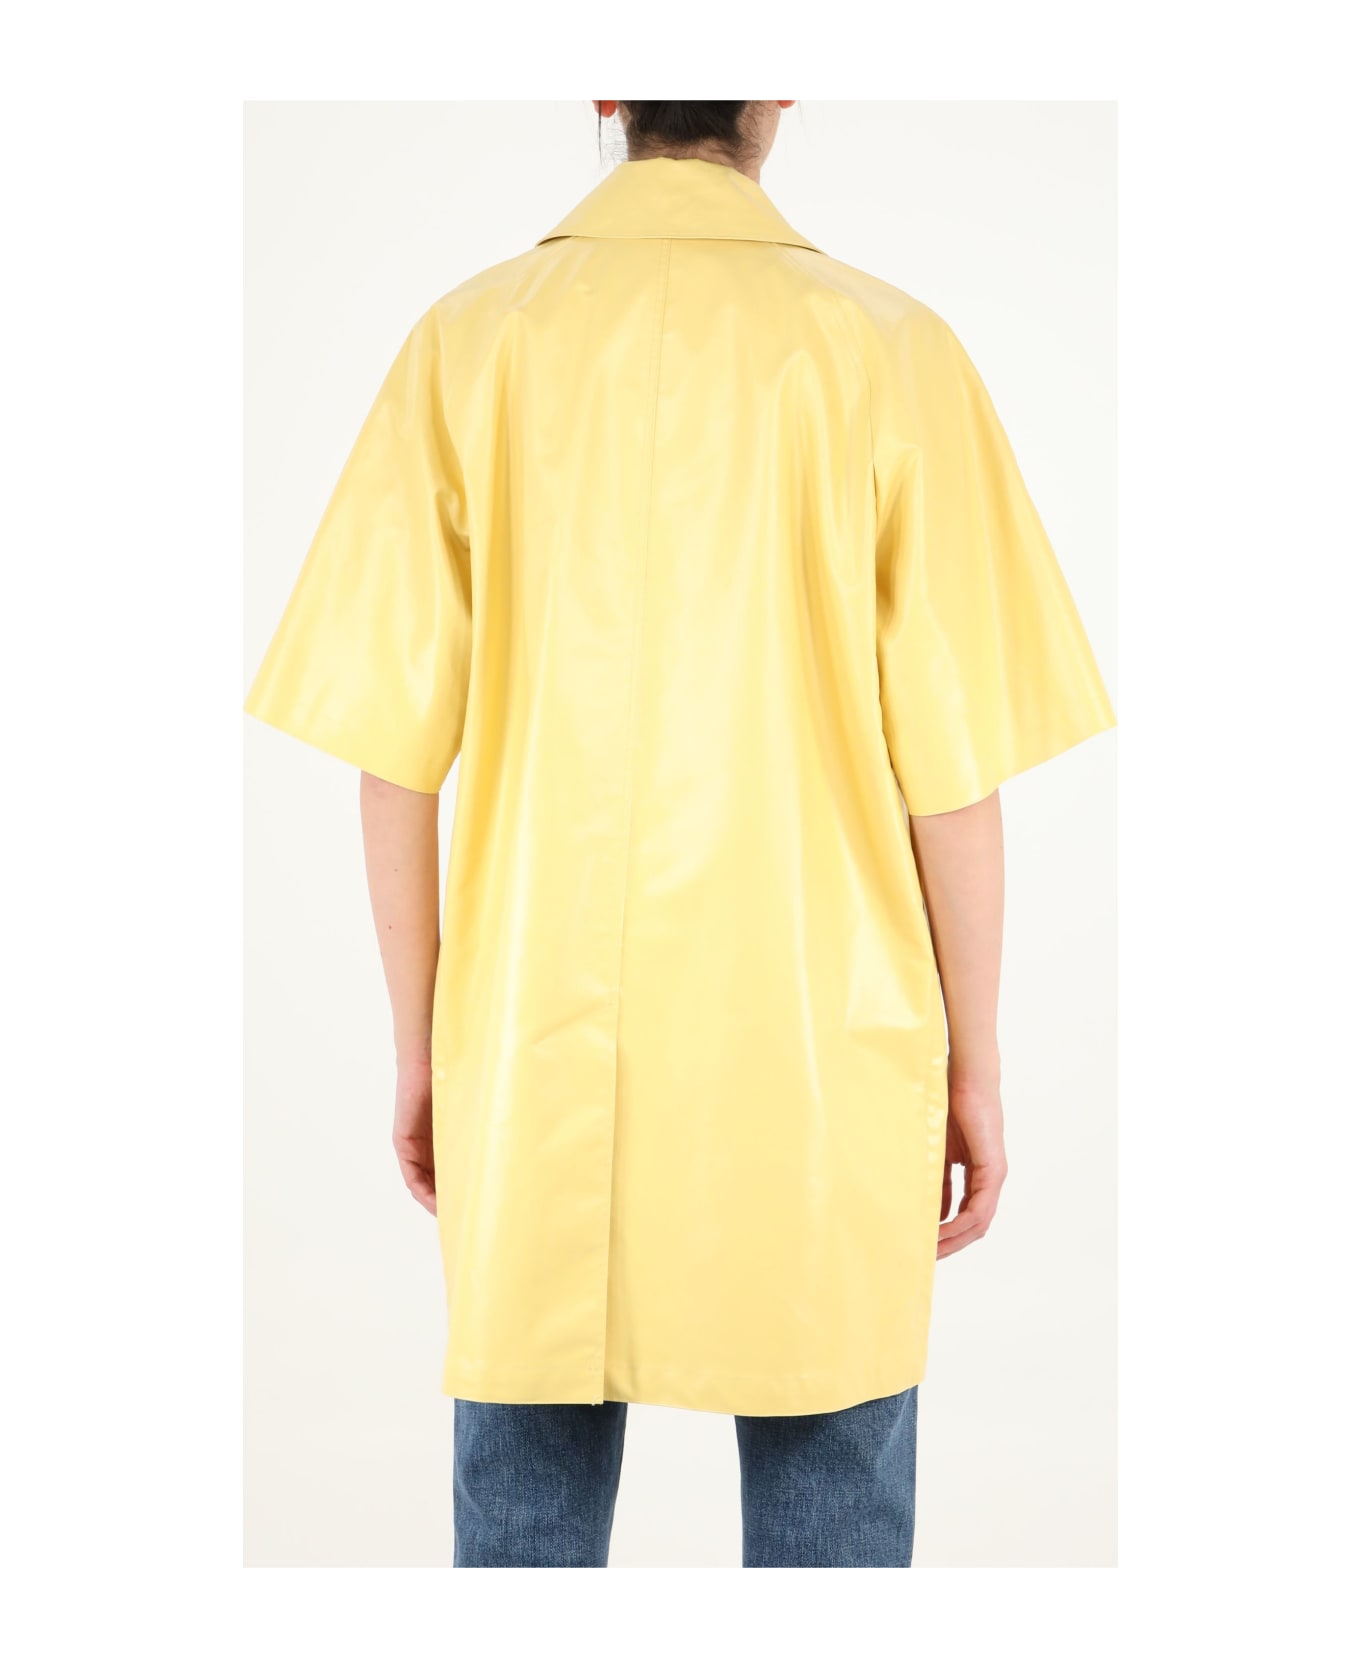 Max Mara Yellow Raincoat - YELLOW